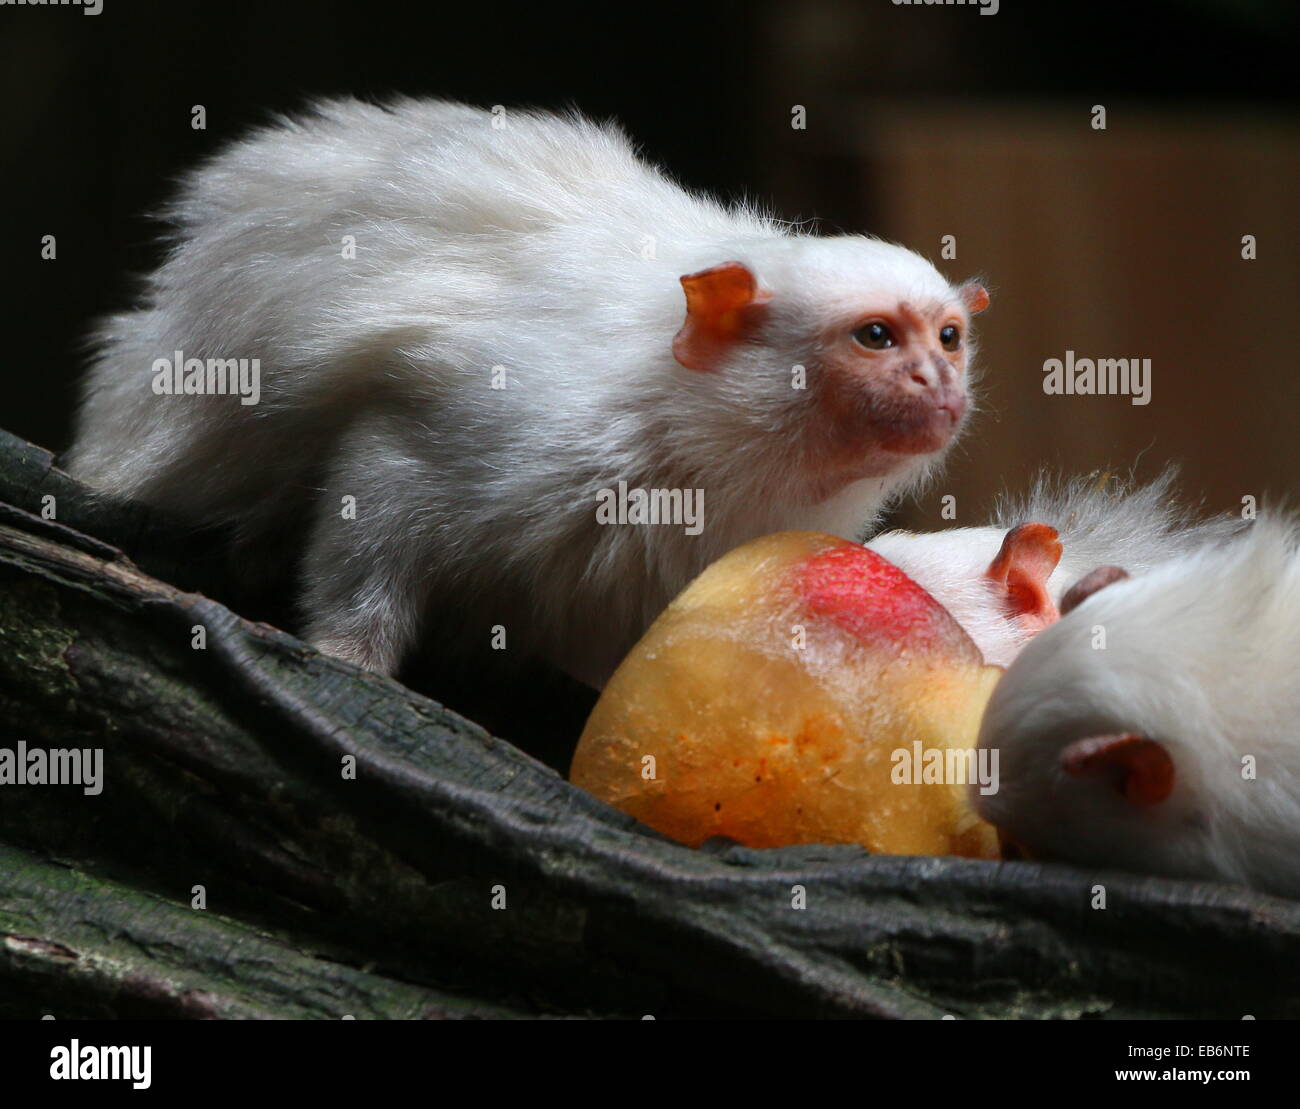 Sud Americana Silvery marmoset (Mico argentatus, Callithrix argentata) alimentazione sulla frutta congelata Foto Stock